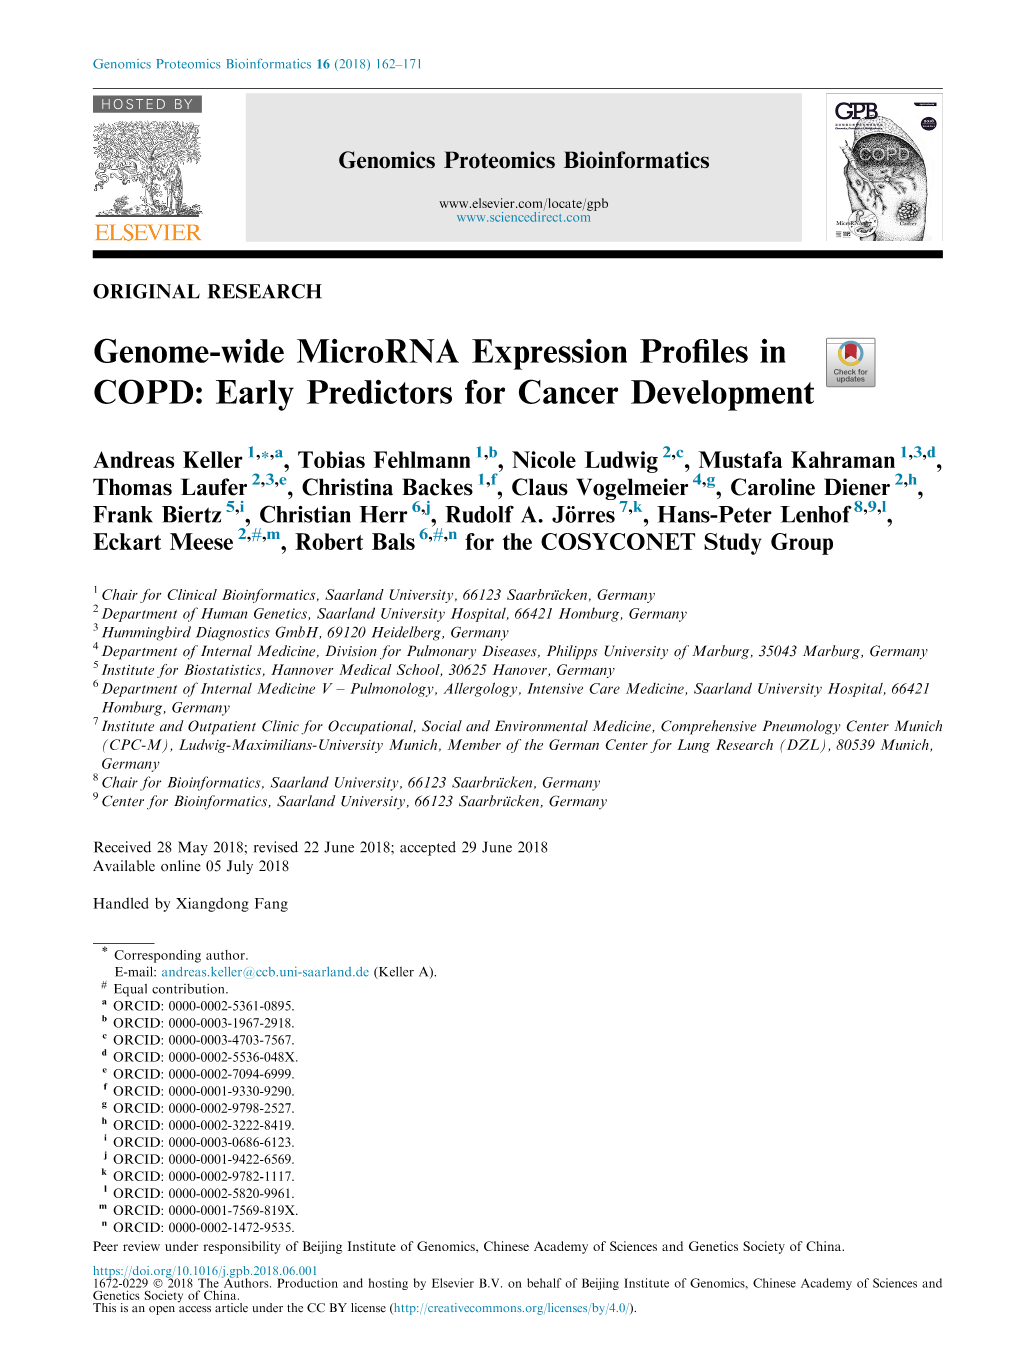 Genome-Wide Microrna Expression Profiles in COPD